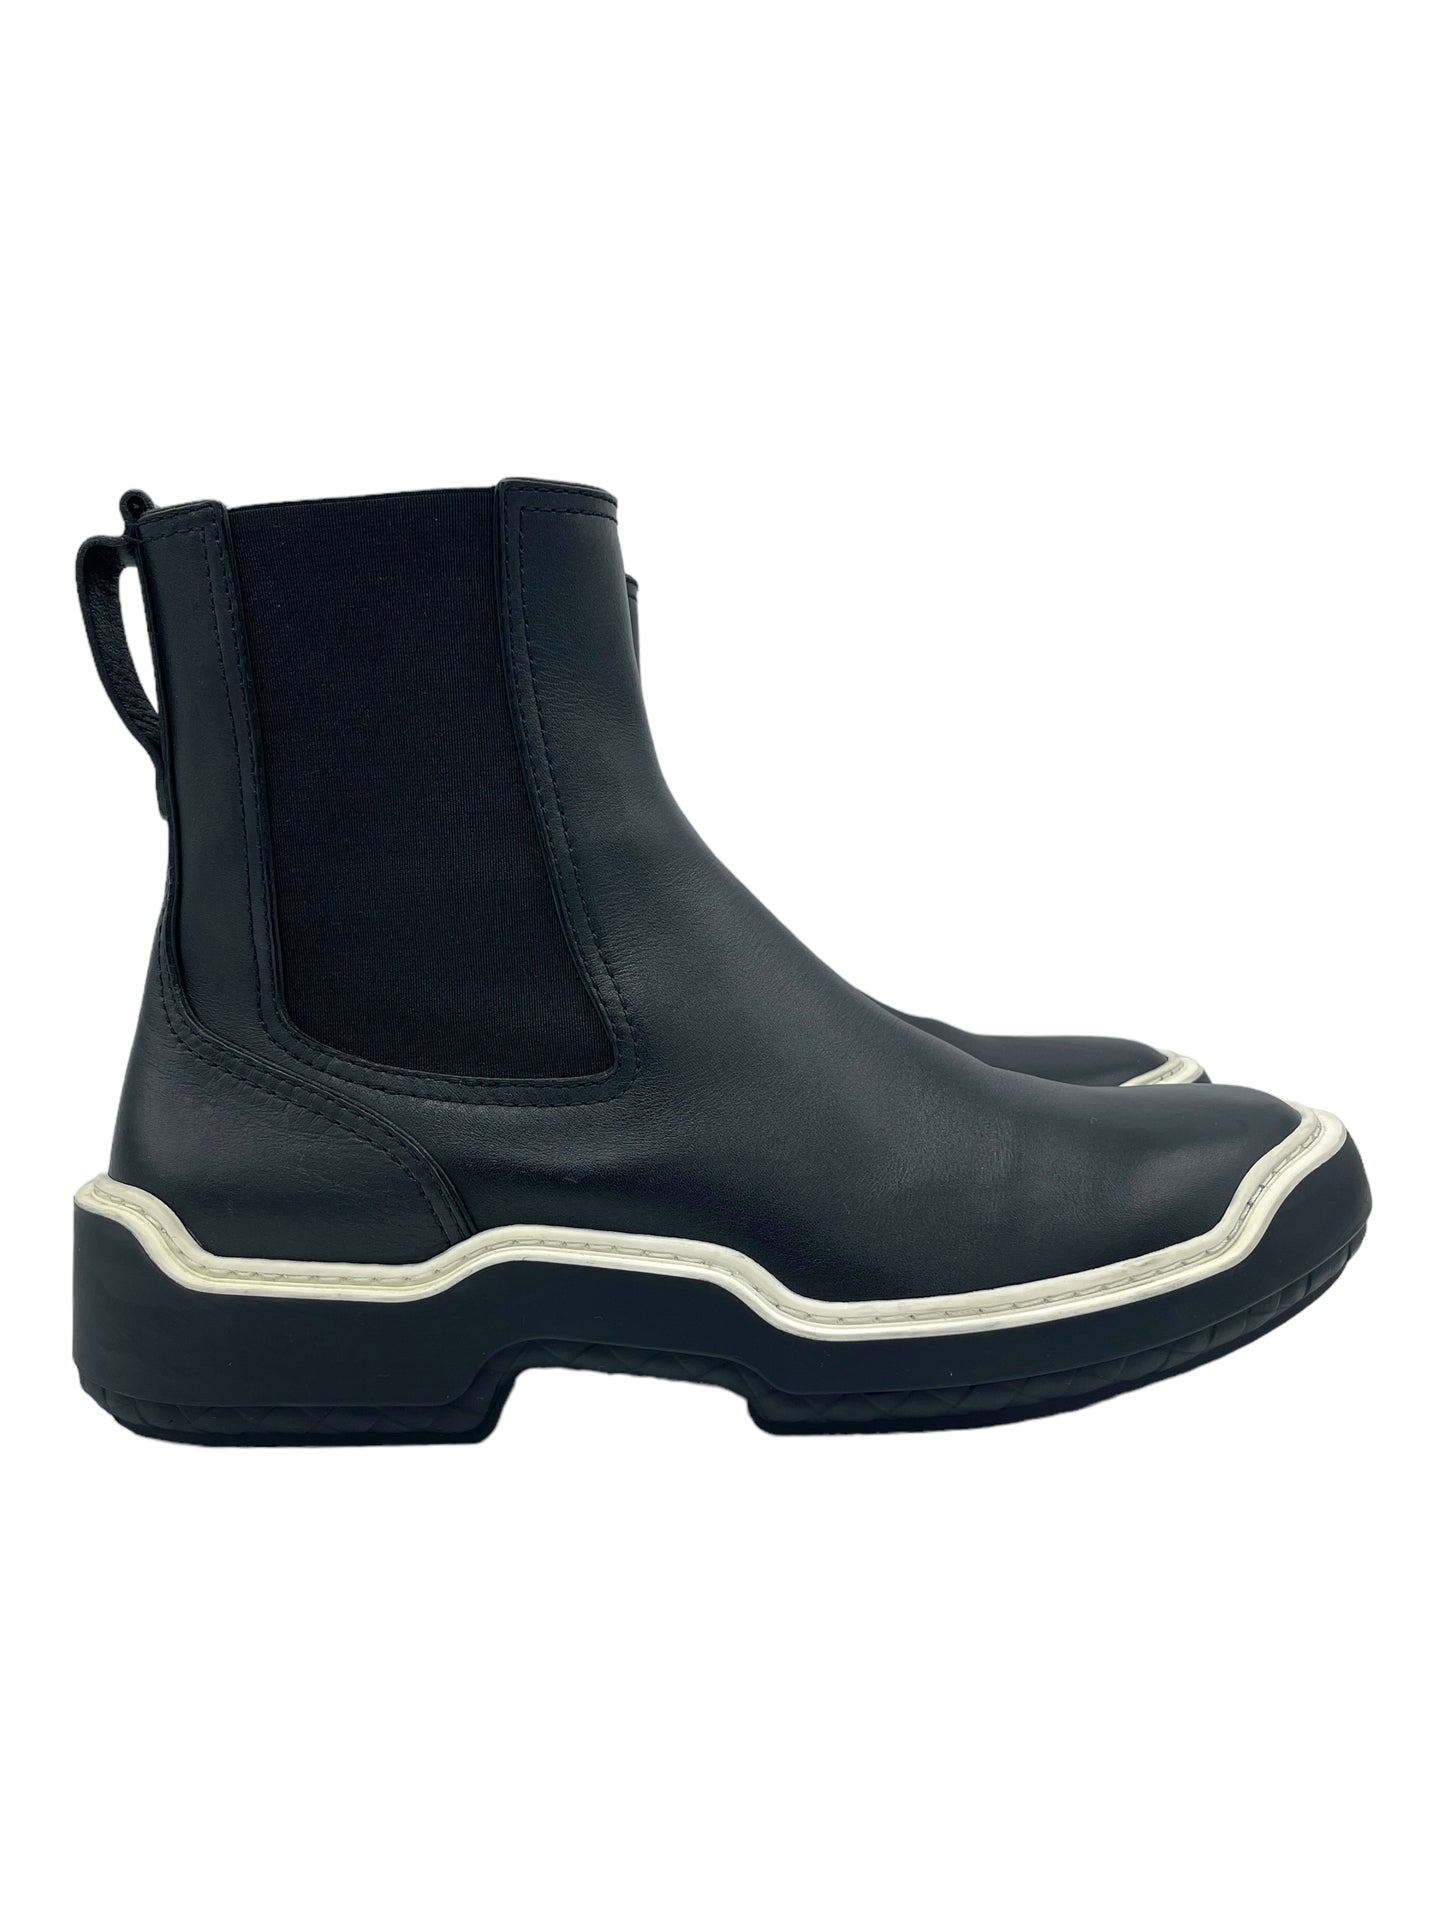 Bottega Veneta Black & White Leather Chelsea Boots 10 M / 11.5 W